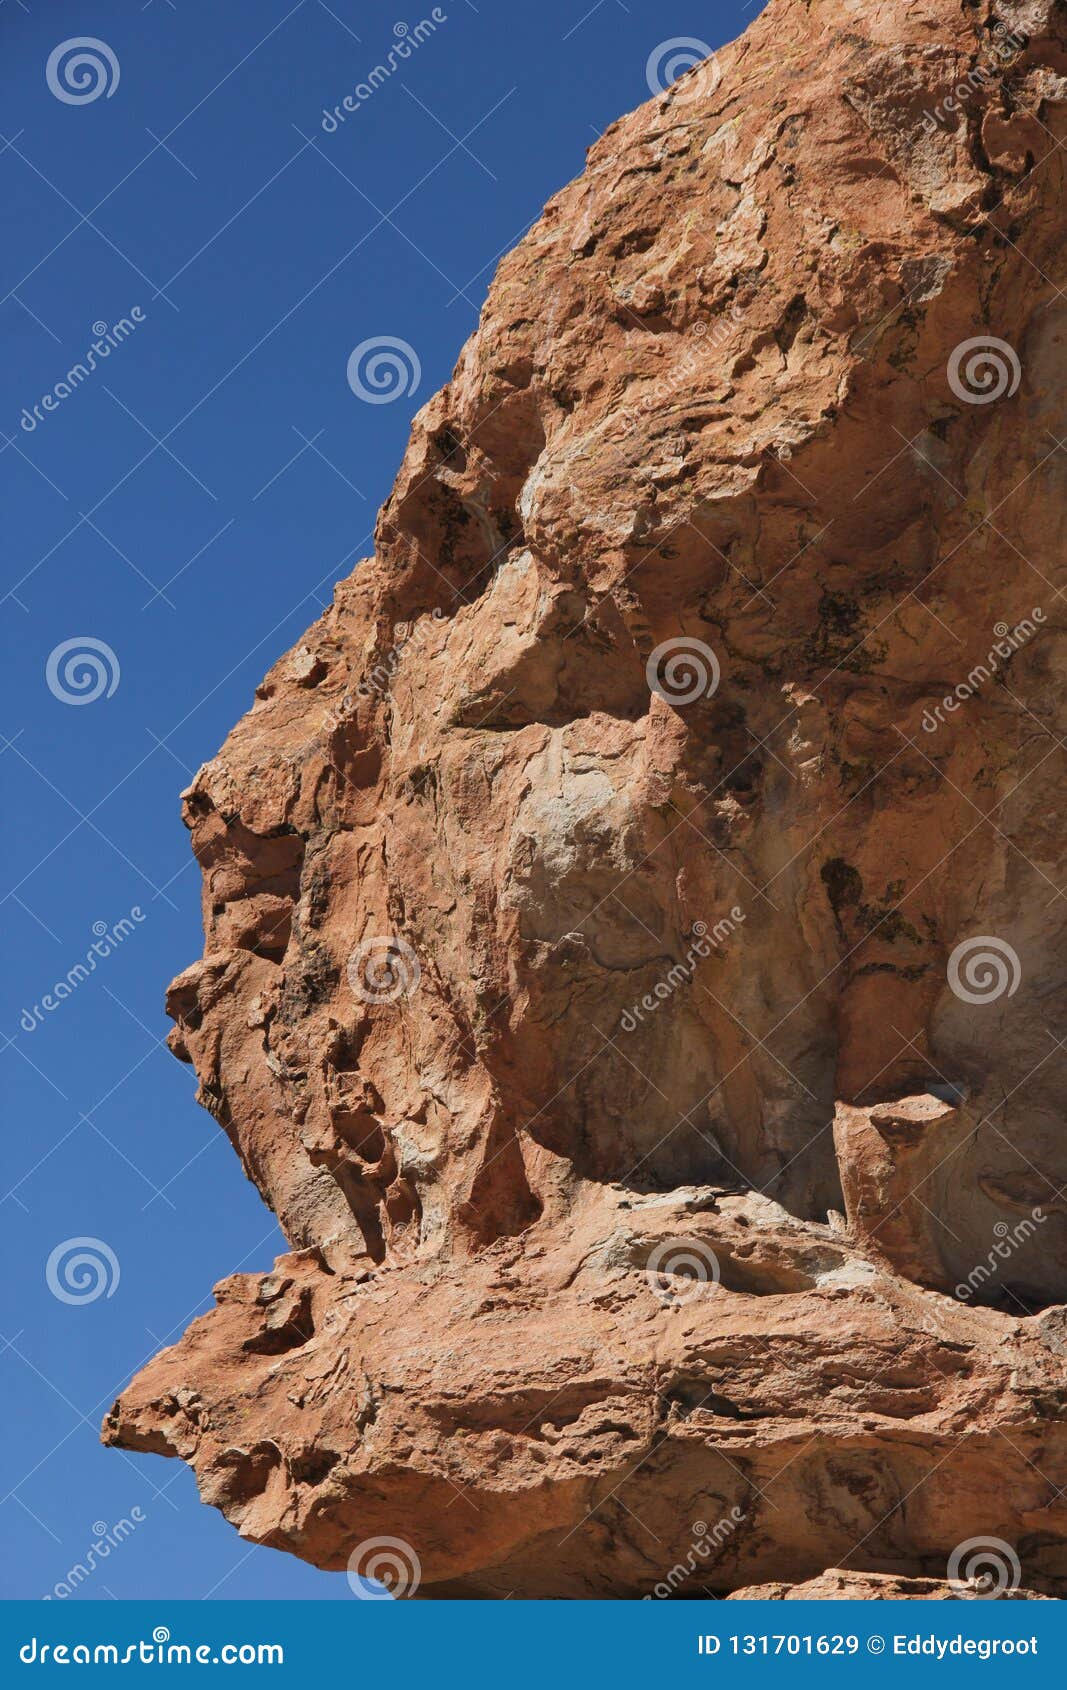 rock formations at valle de las rocas